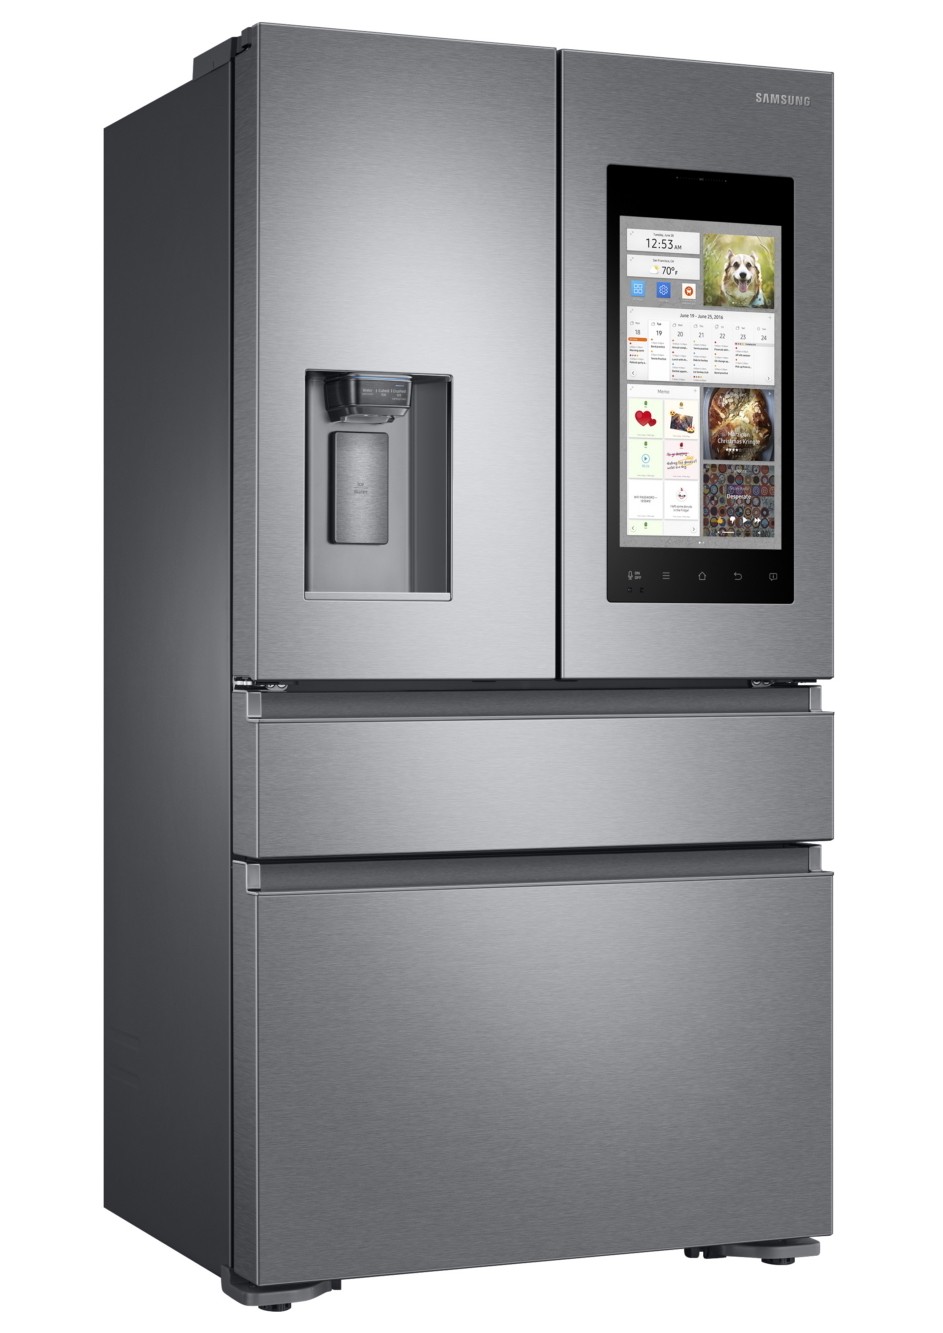 Si possono trovare frigoriferi con display touch?